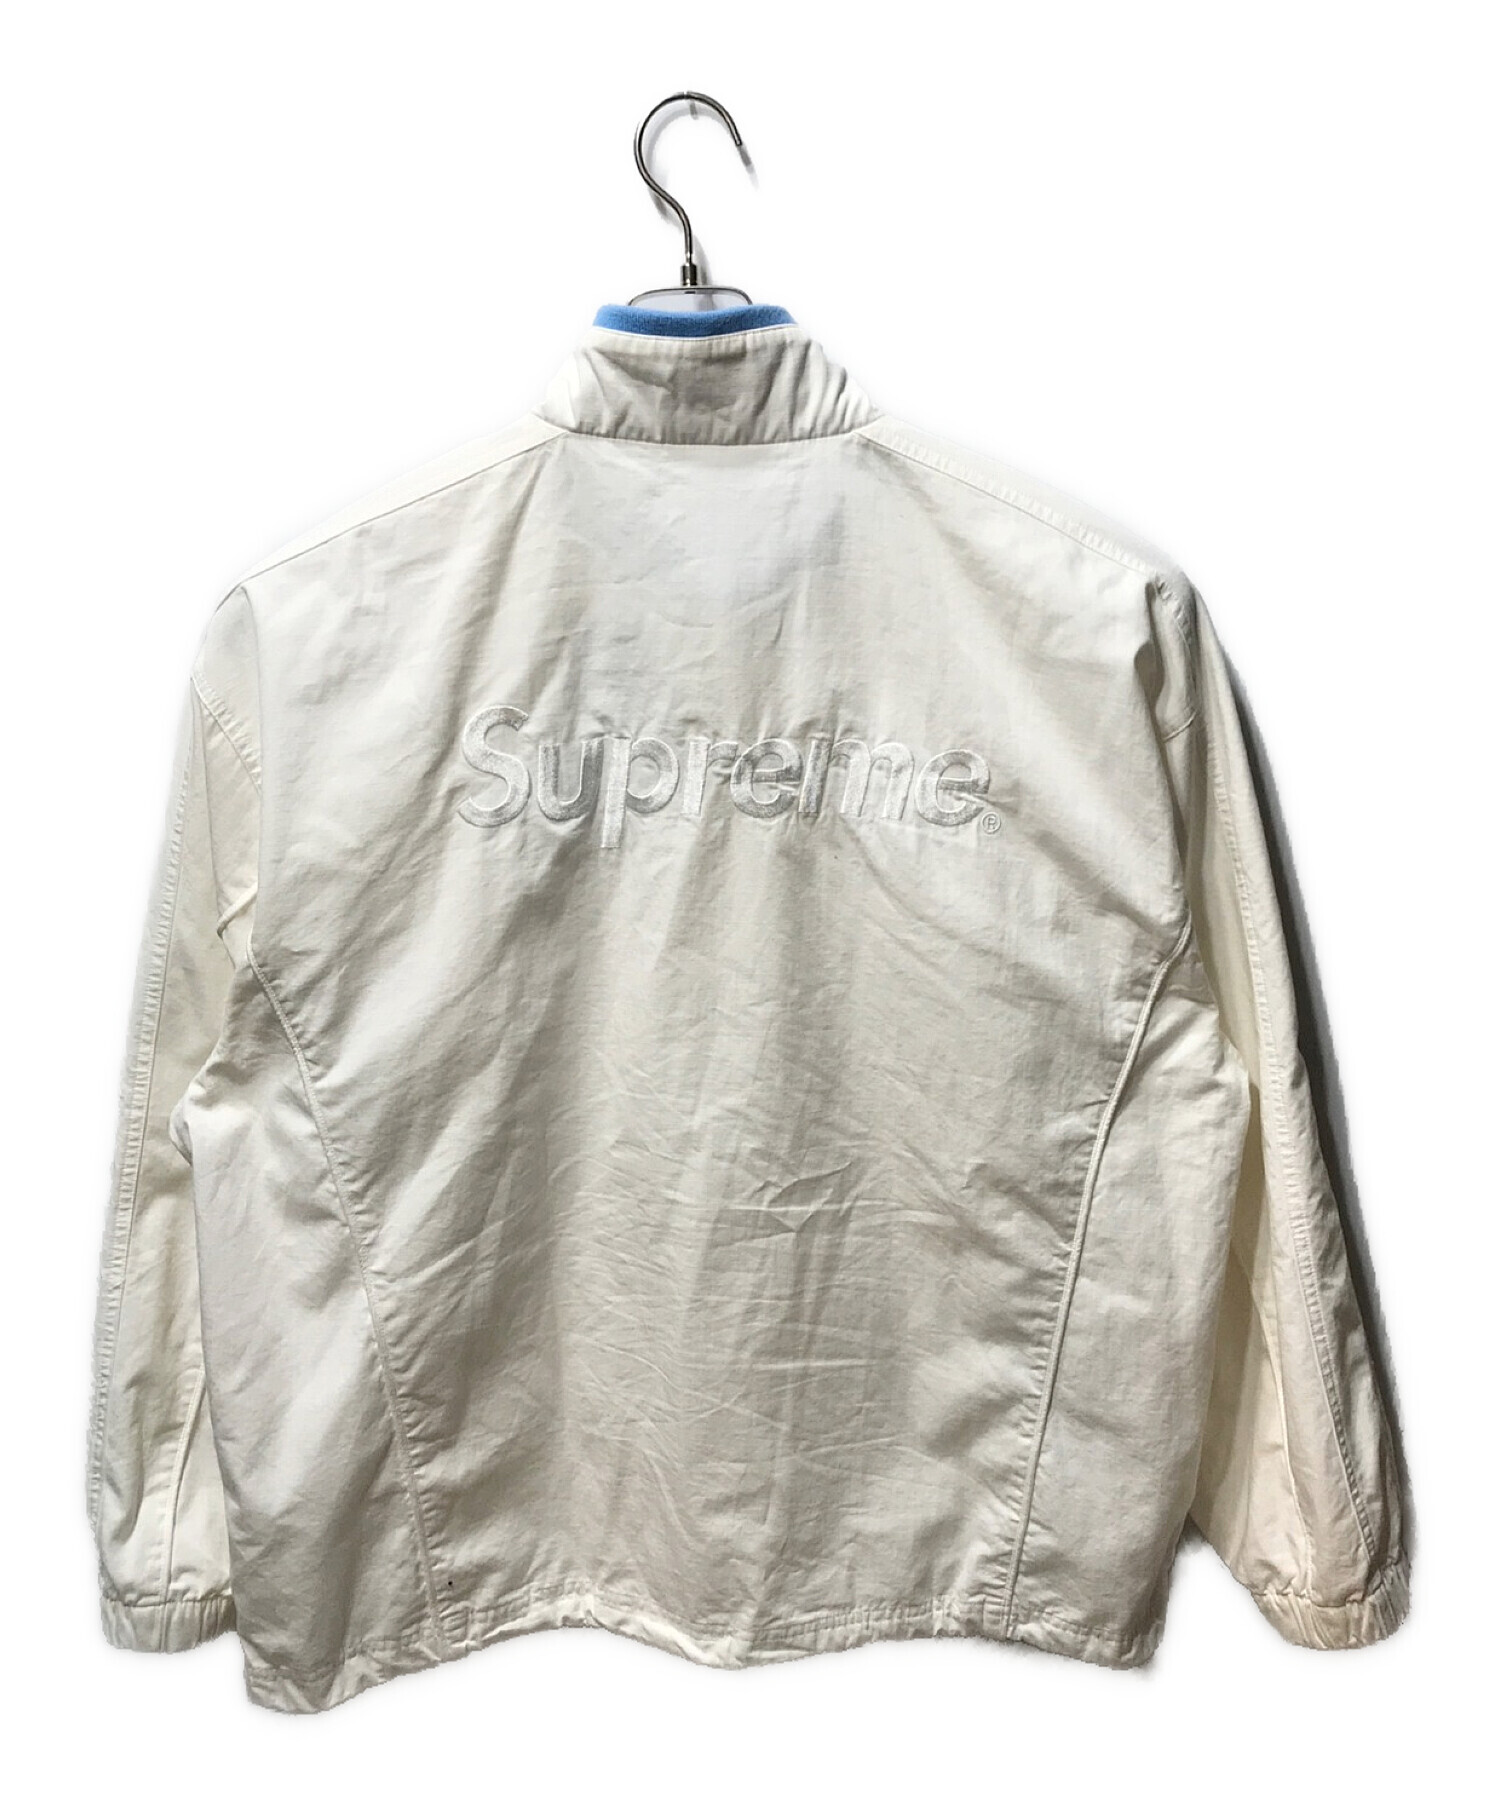 Supreme (シュプリーム) UMBRO (アンブロ) 23AW Umbro Cotton Ripstop Track Jacket  コットンリップストップトラックジャケット ホワイト サイズ:XL